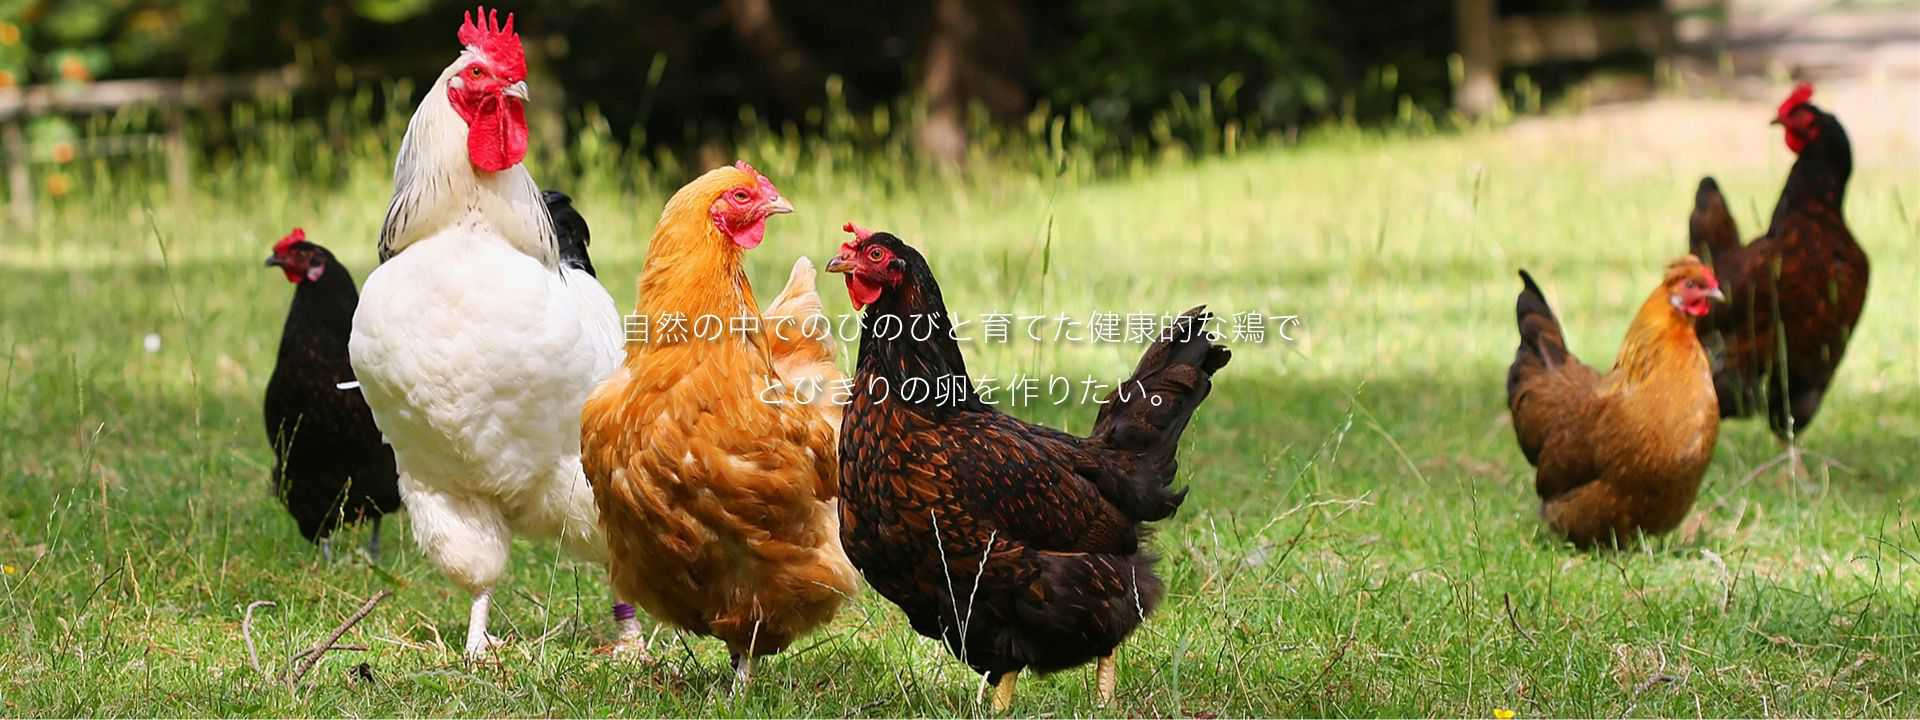 自然の中でのびのびと育てた健康的な鶏でとびきりの卵を作りたい